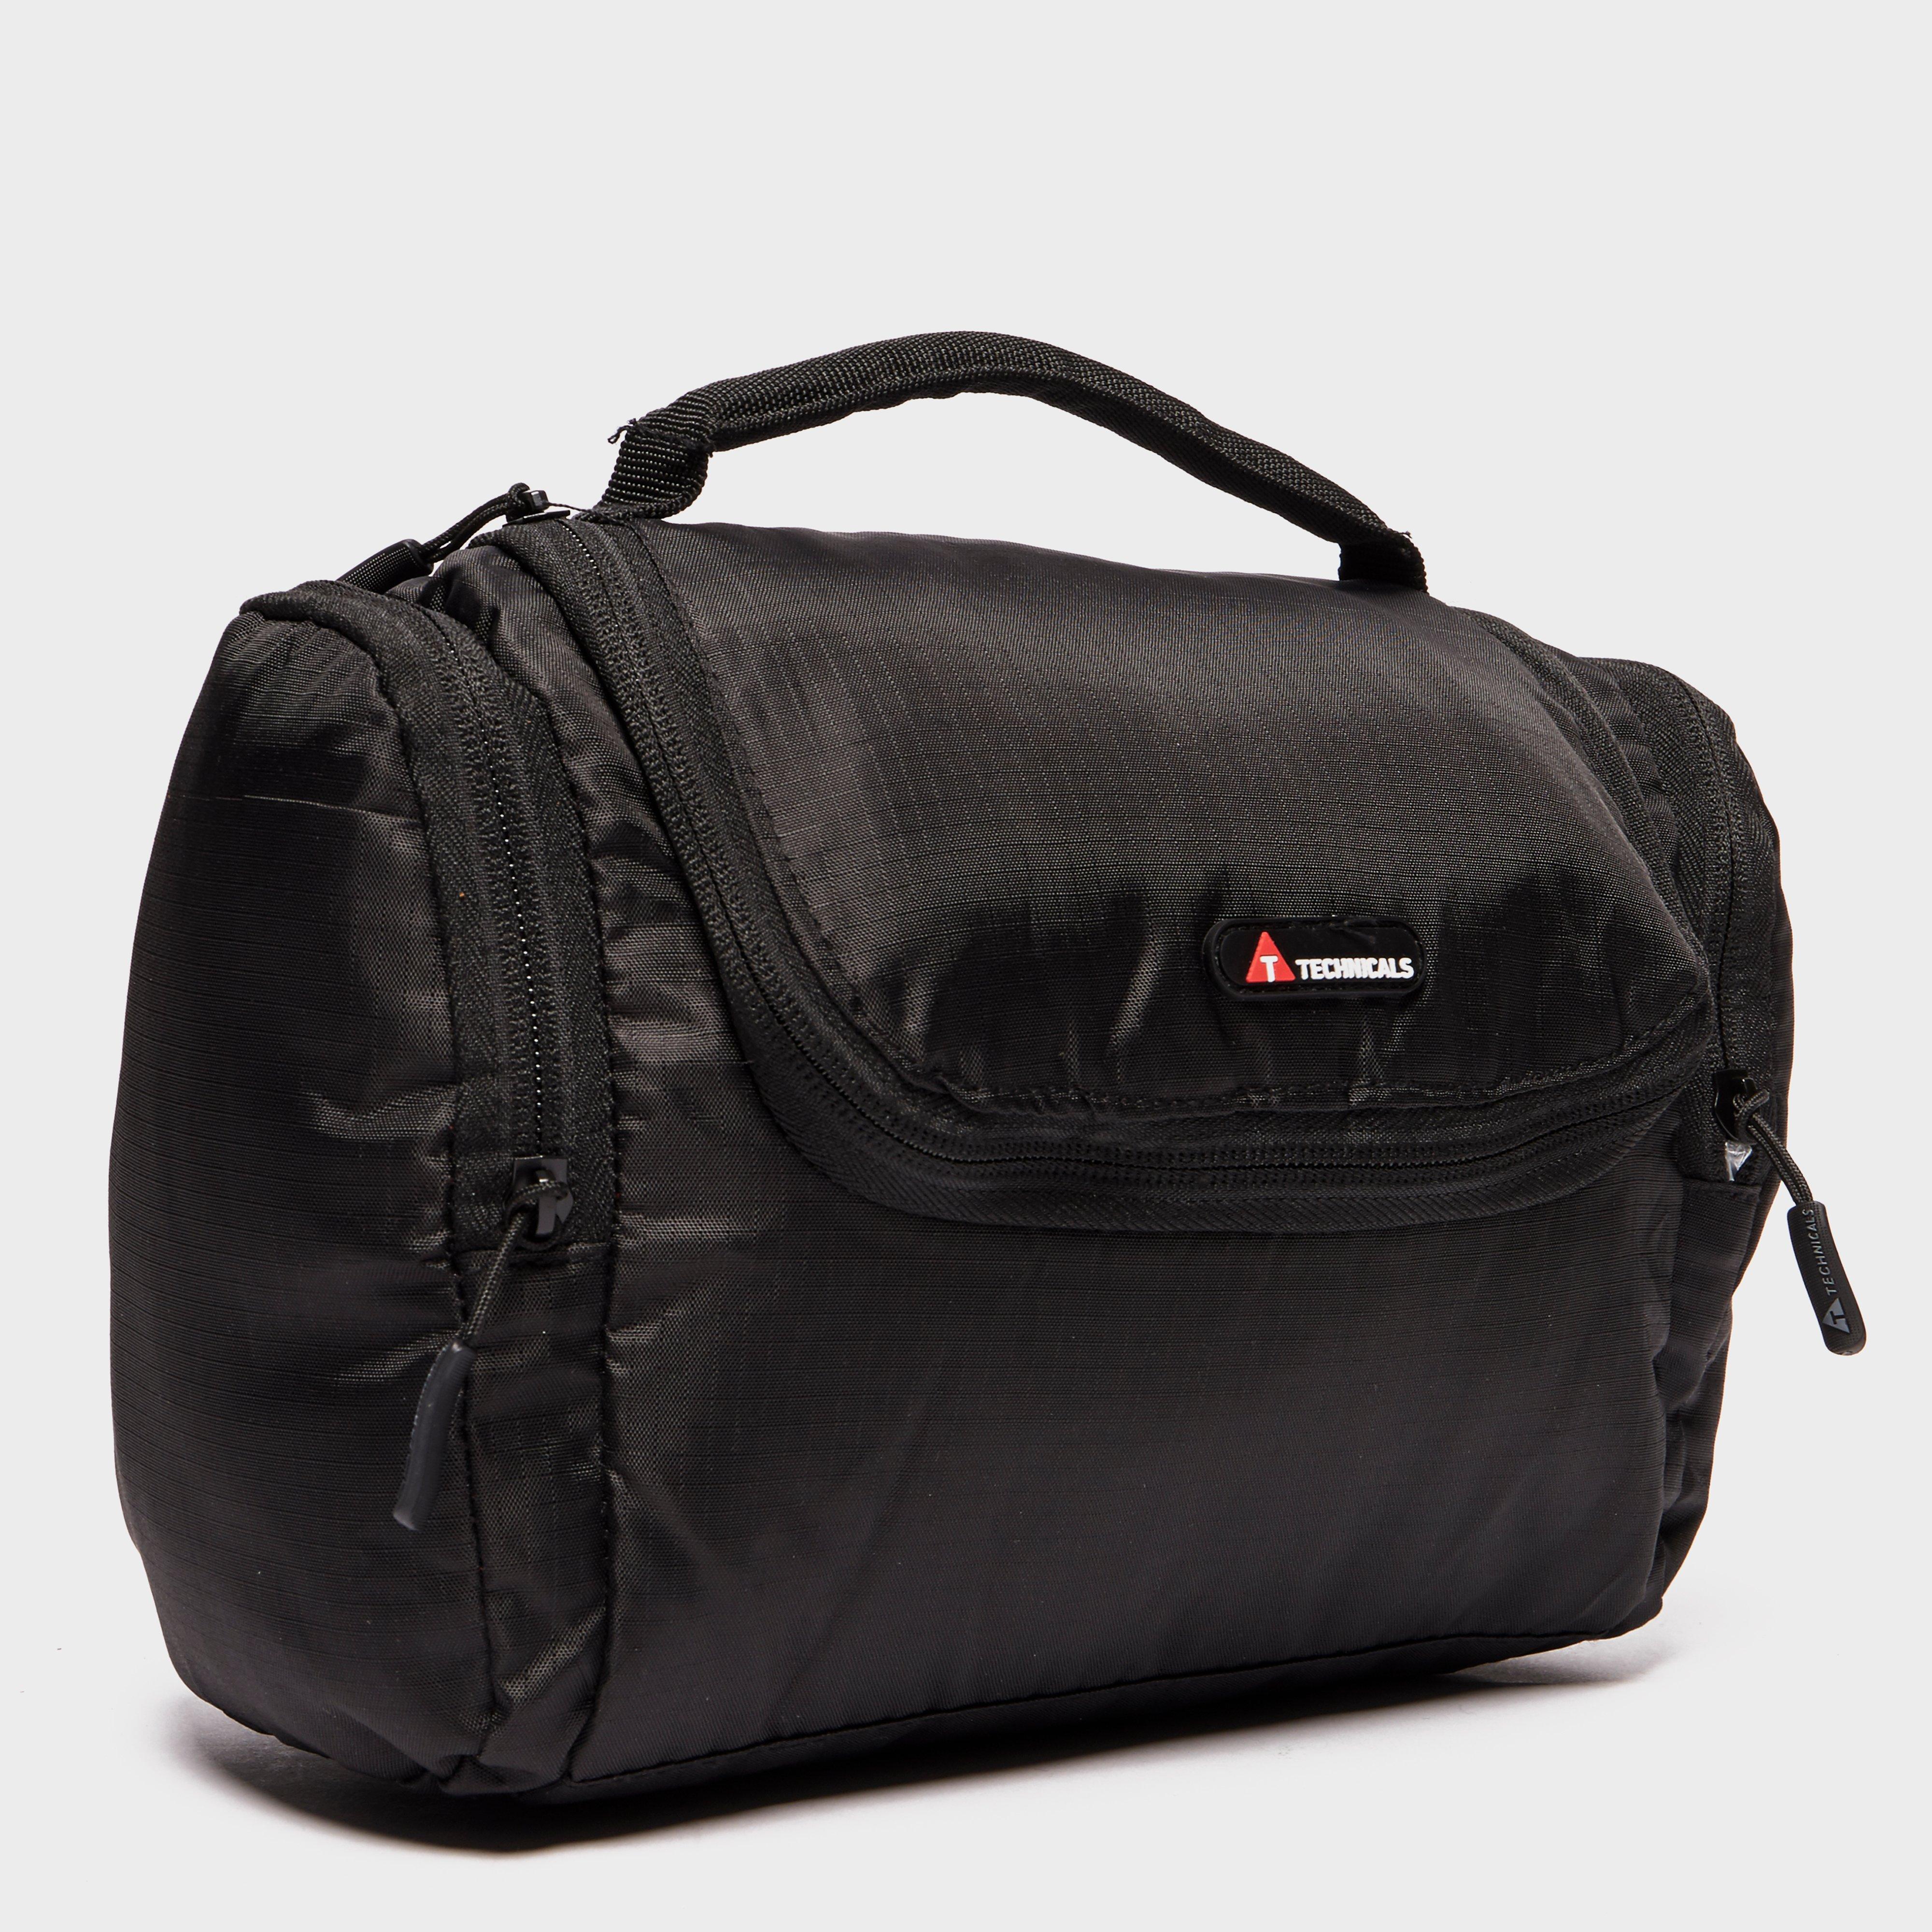 Technicals Travel Wash Bag - Black/bk  Black/bk